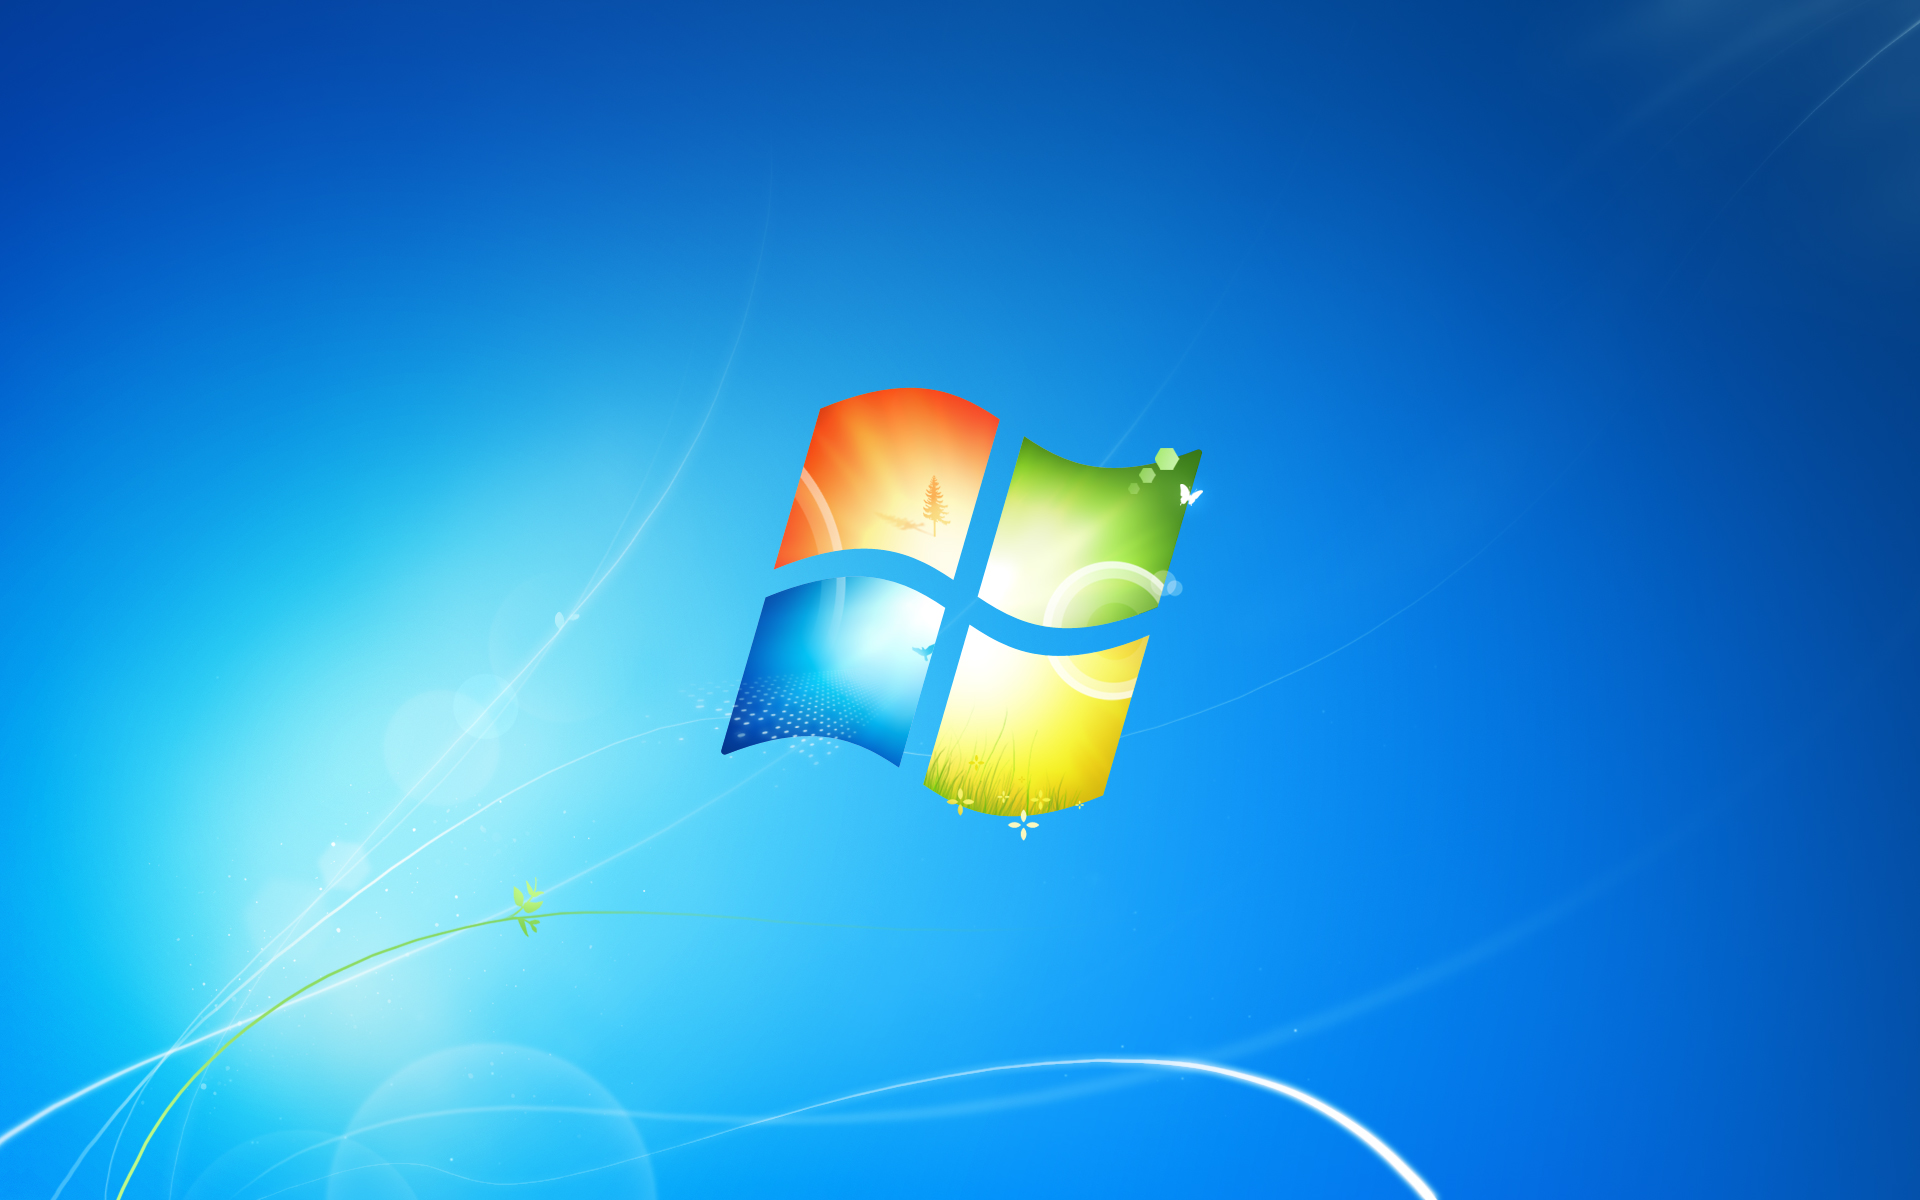 Khám phá bức tranh phông nền Windows 7 Home Basic đầy màu sắc, mang lại cho bạn một trải nghiệm trực quan, tươi mới khi truy cập máy tính của mình. Hãy tìm kiếm và sử dụng nó để nâng cao trải nghiệm làm việc và giải trí của bạn.